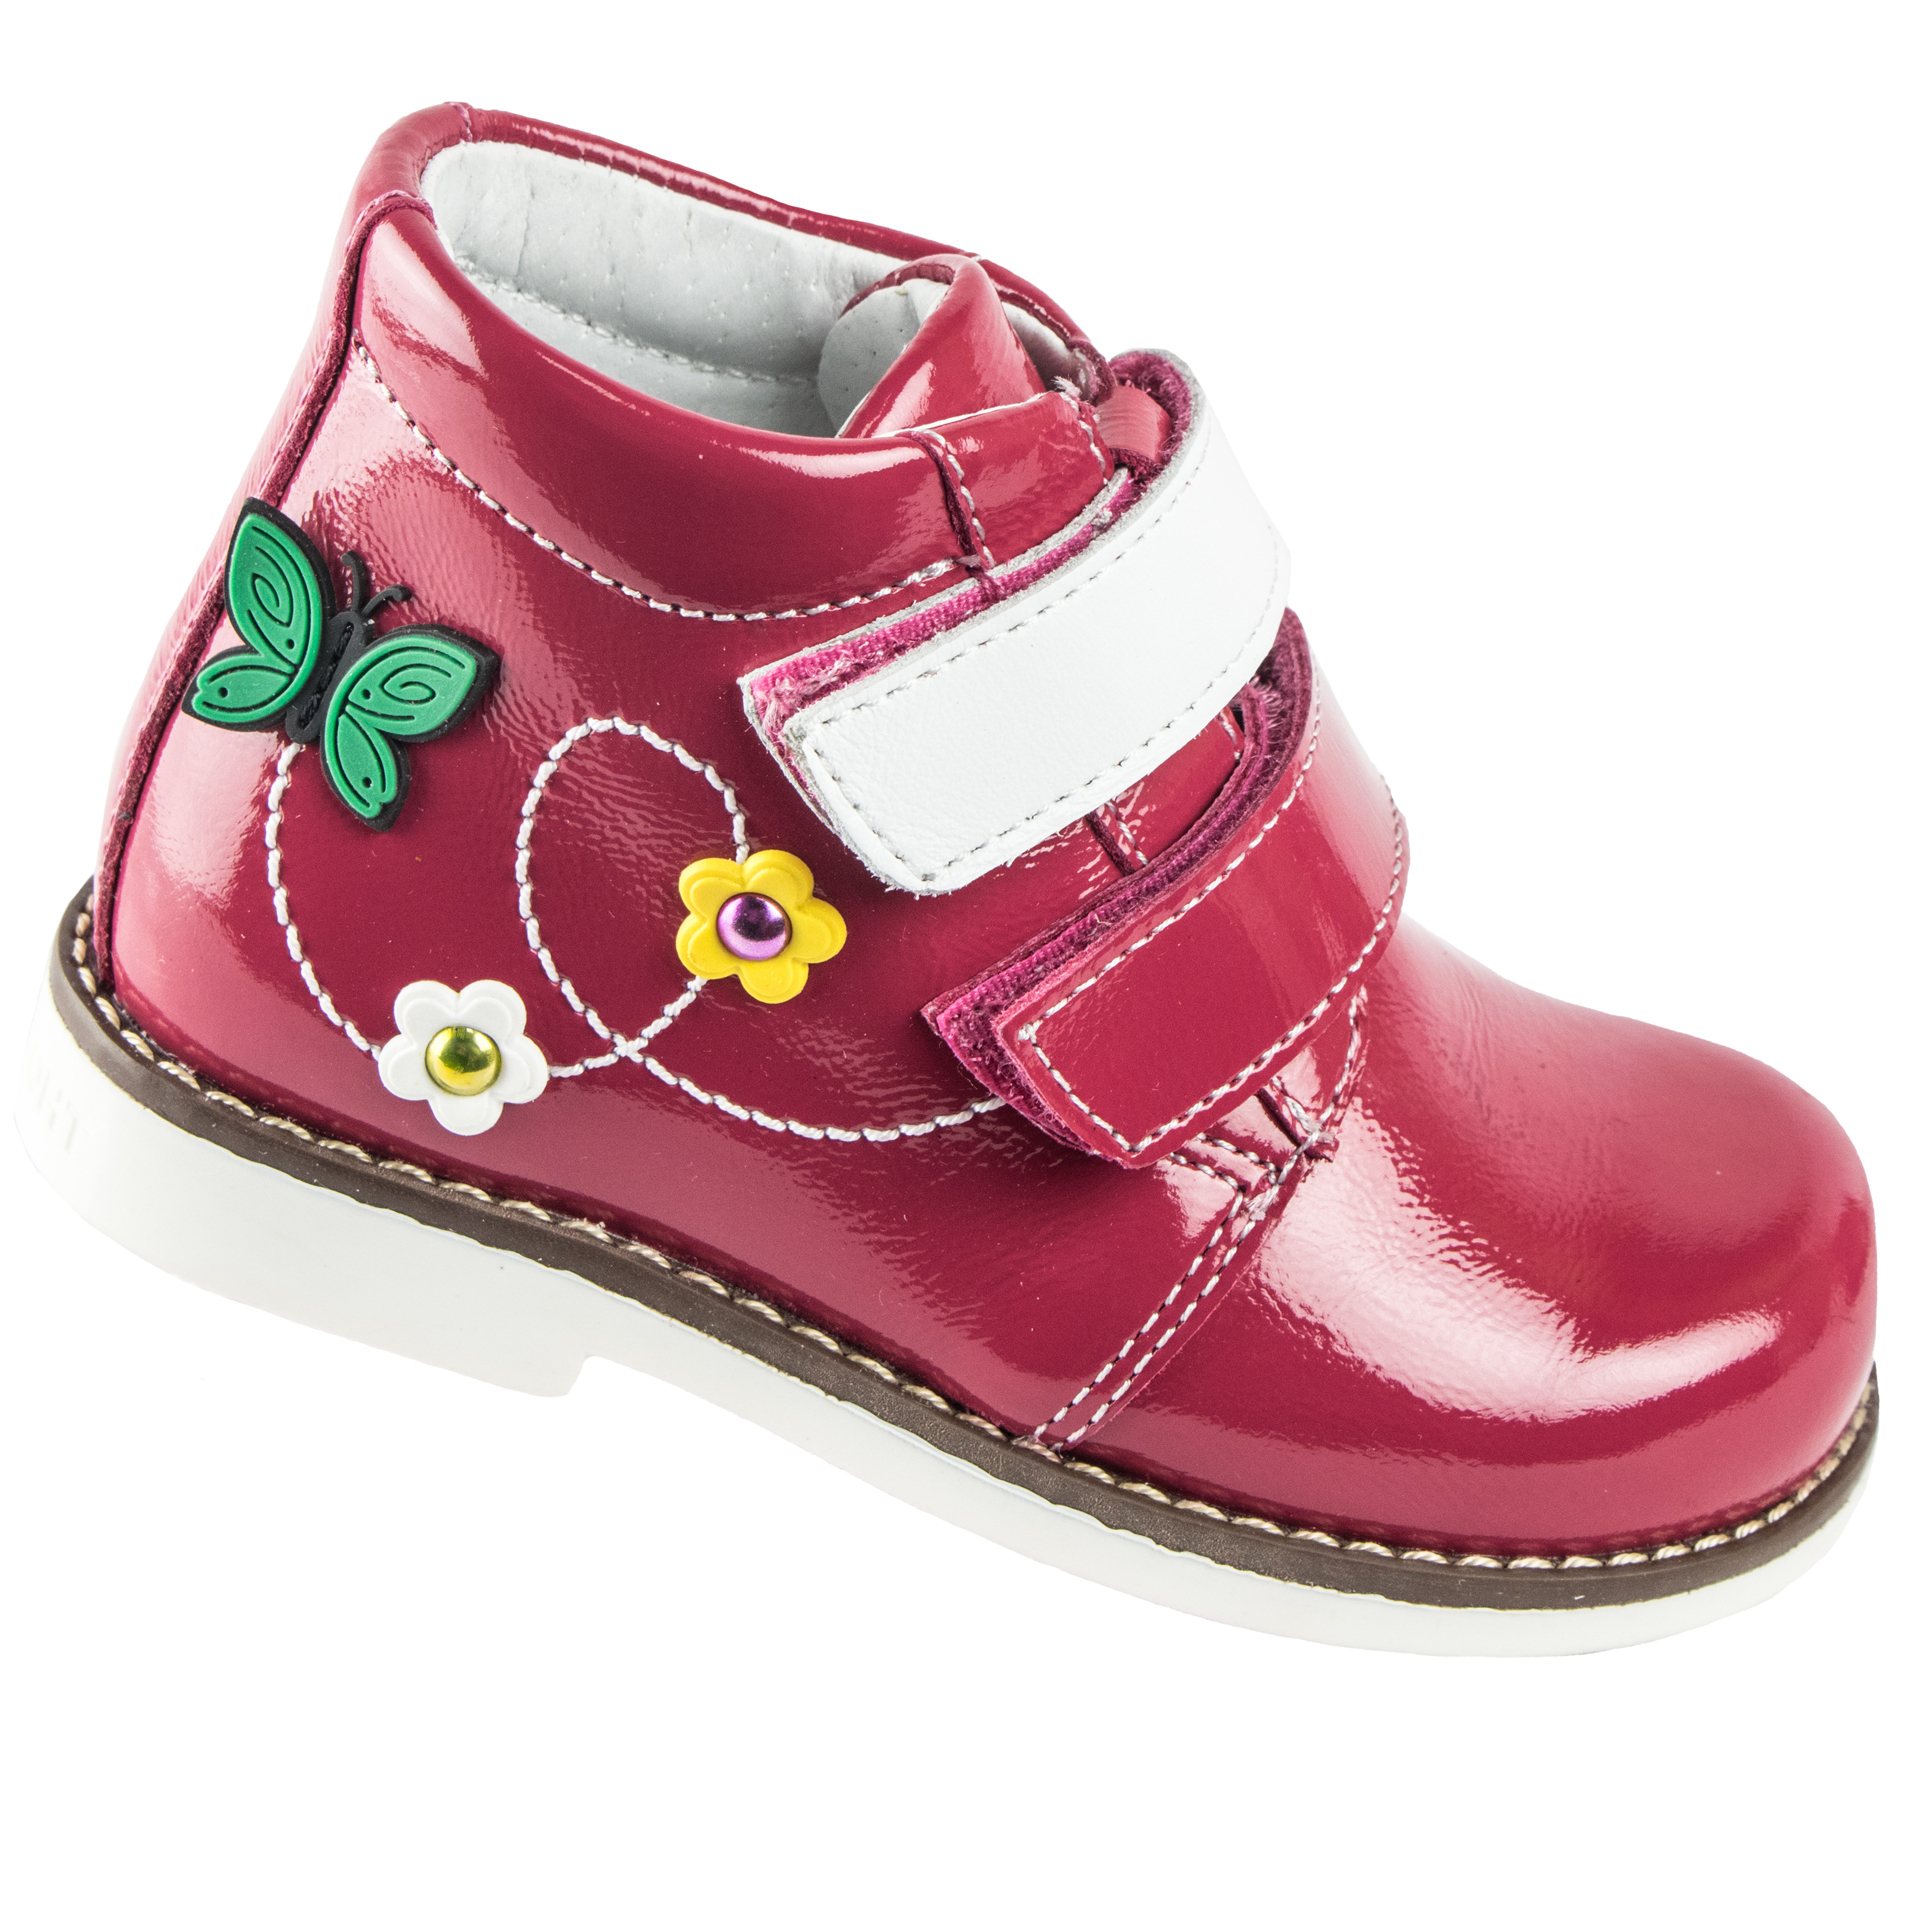 Демисезонные ботинки детские (1507) материал Лаковая кожа, цвет Красный  для девочки 23-26 размеры – Sole Kids